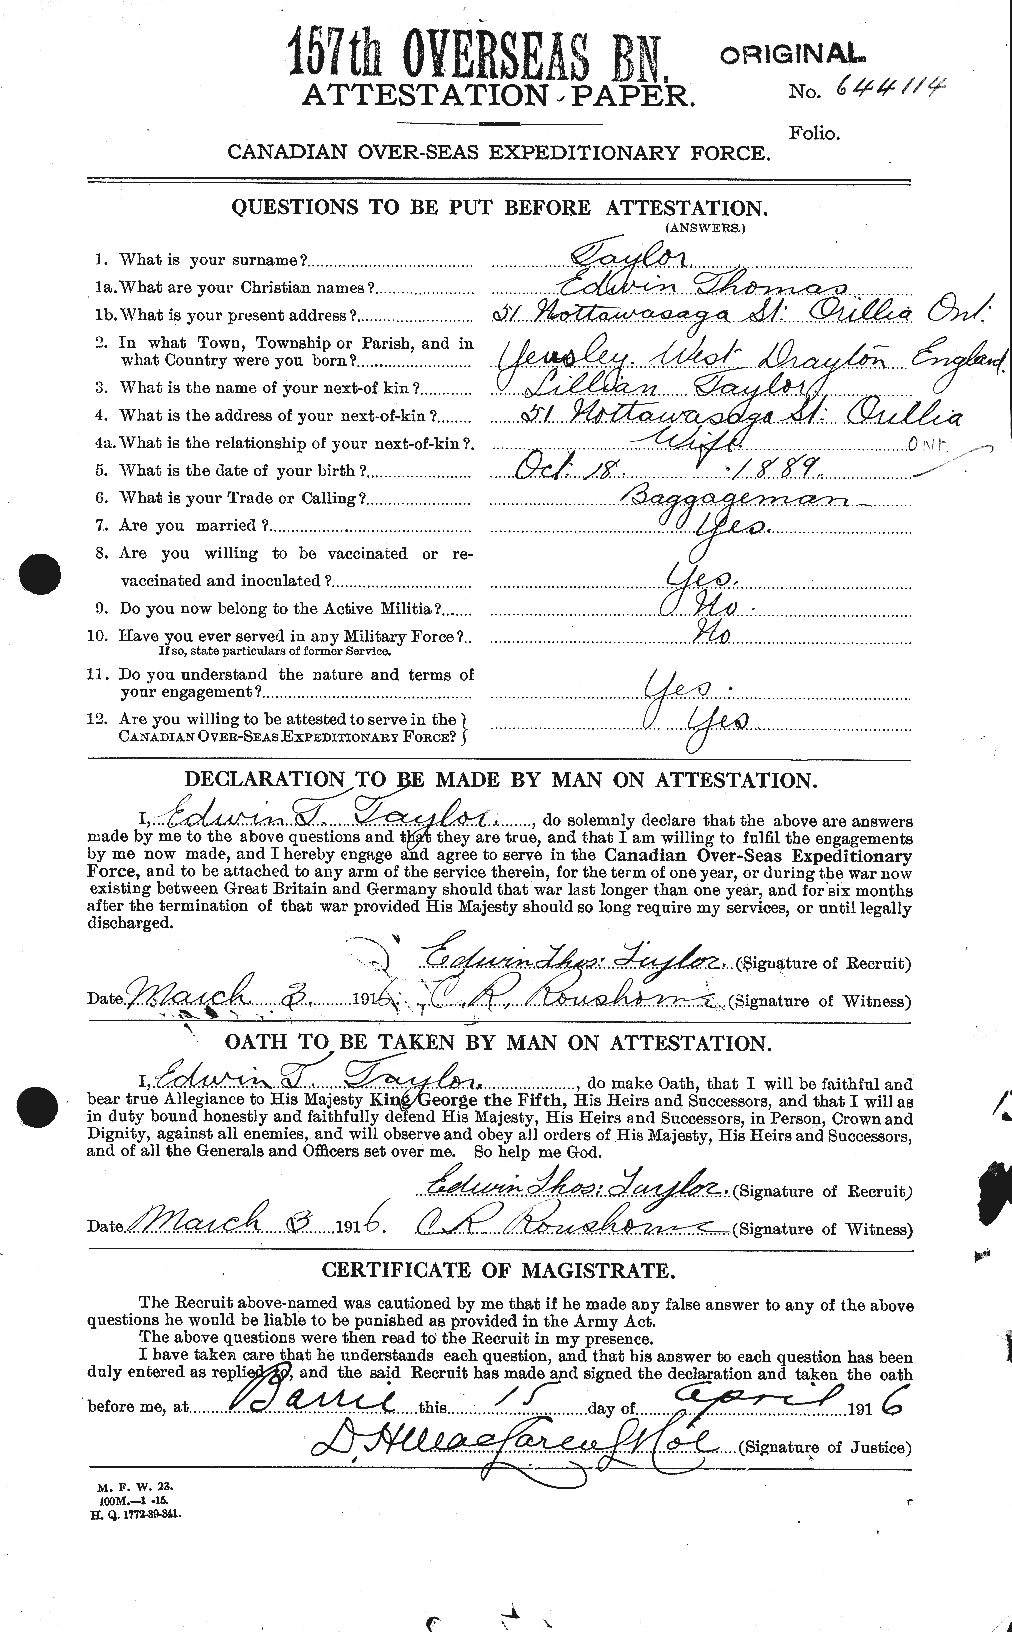 Dossiers du Personnel de la Première Guerre mondiale - CEC 627344a